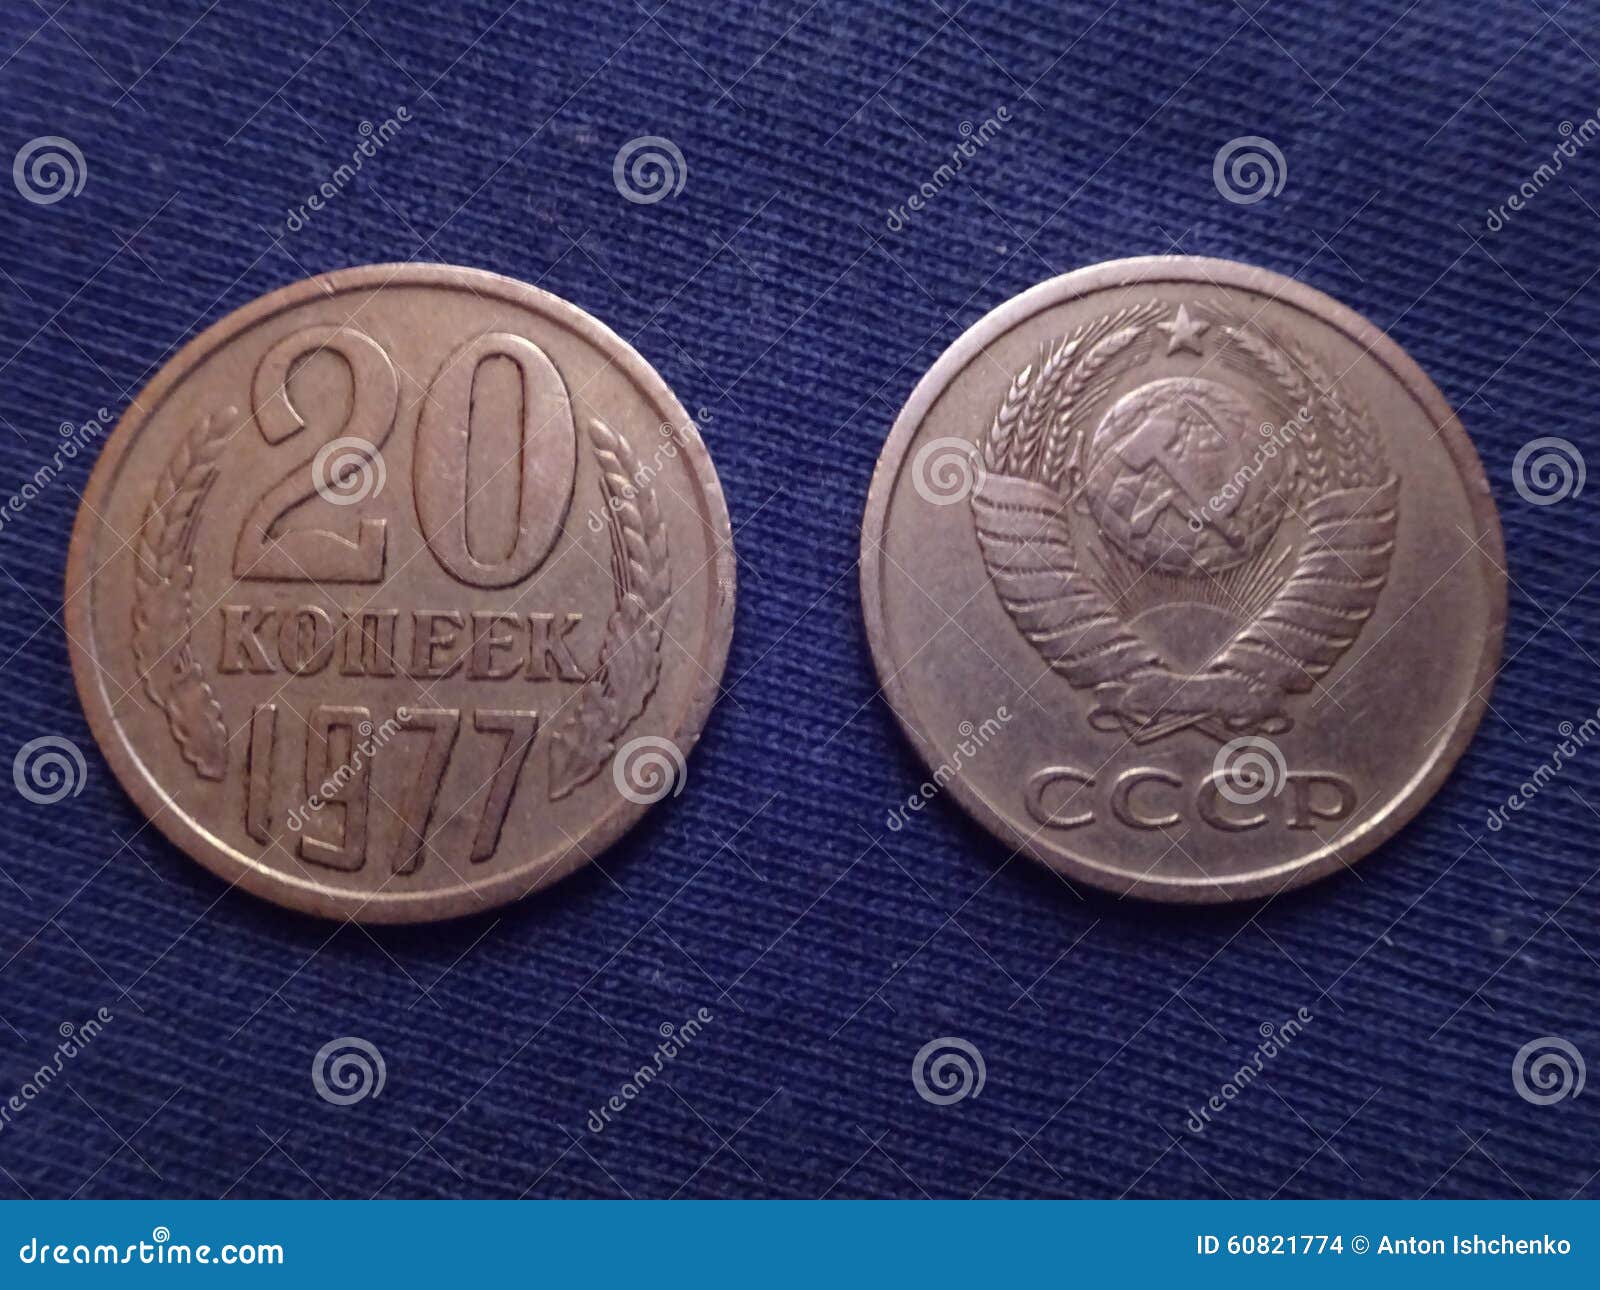 苏联钱币硬币2枚旧品-价格:3元-se93814435-外国钱币-零售-7788收藏__收藏热线